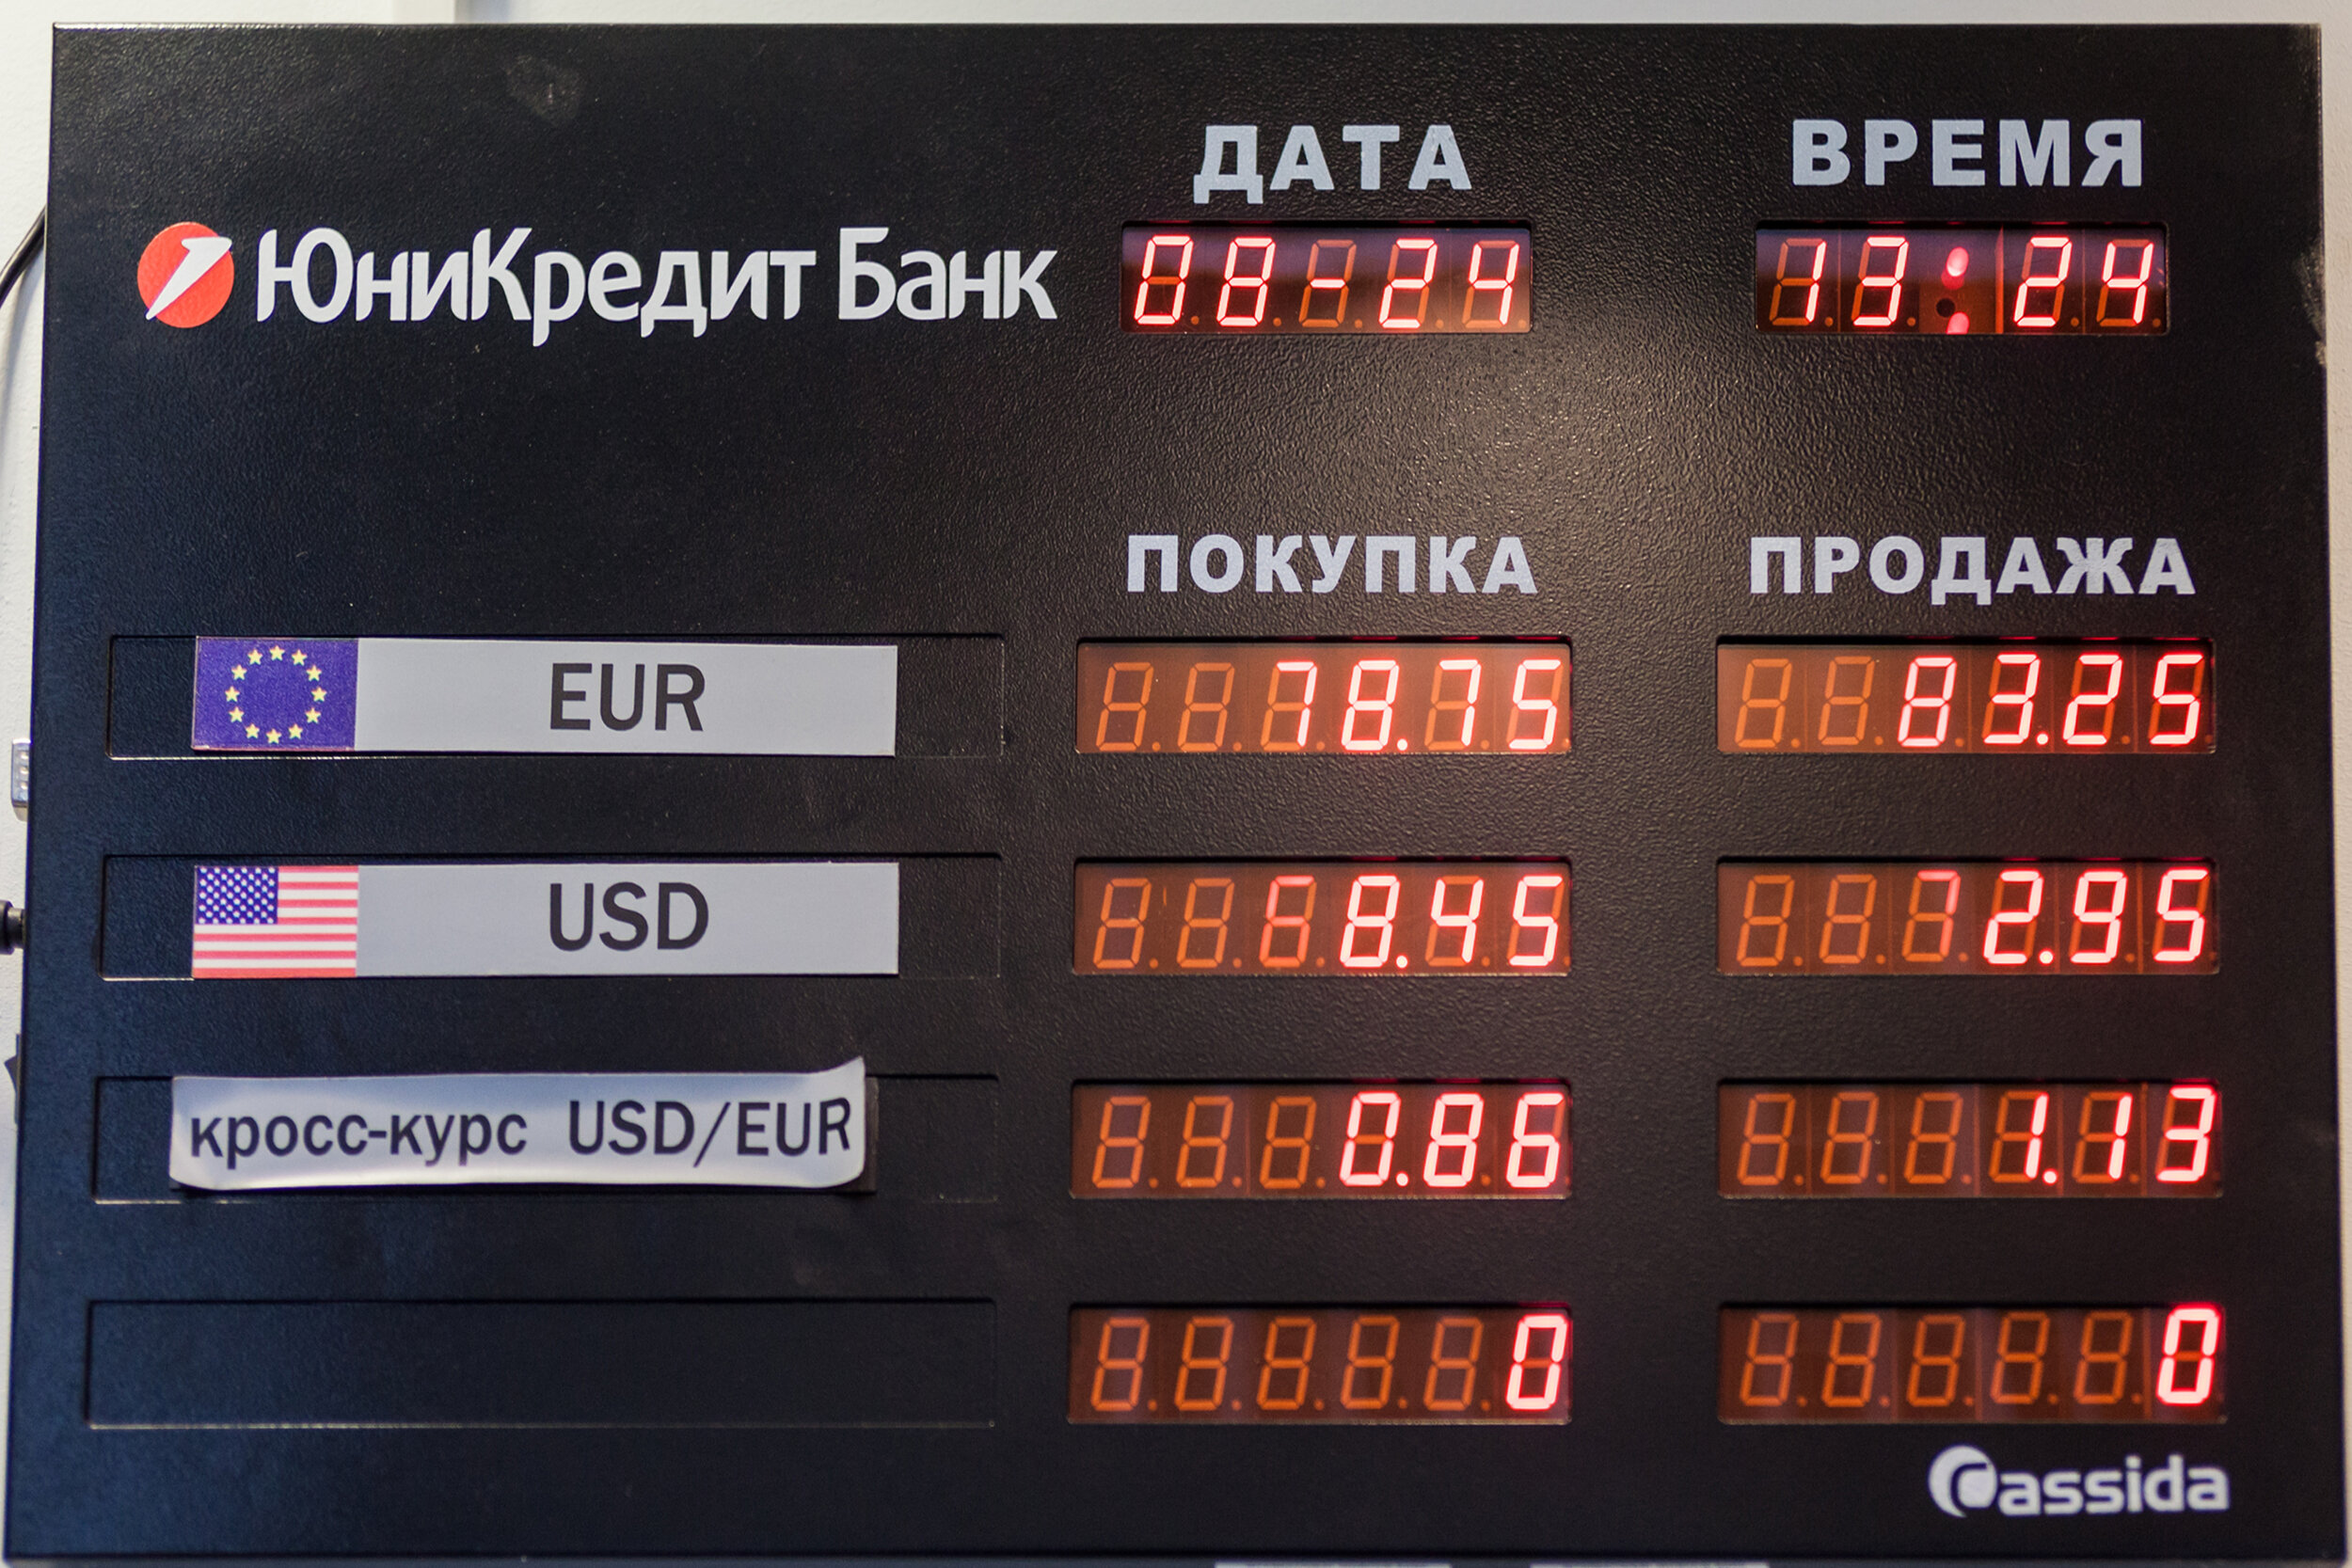 Курс валюты на сегодня евро покупка. Курсы валют. Табло курса валют. Табло курсов валют. Табло валют в банке.